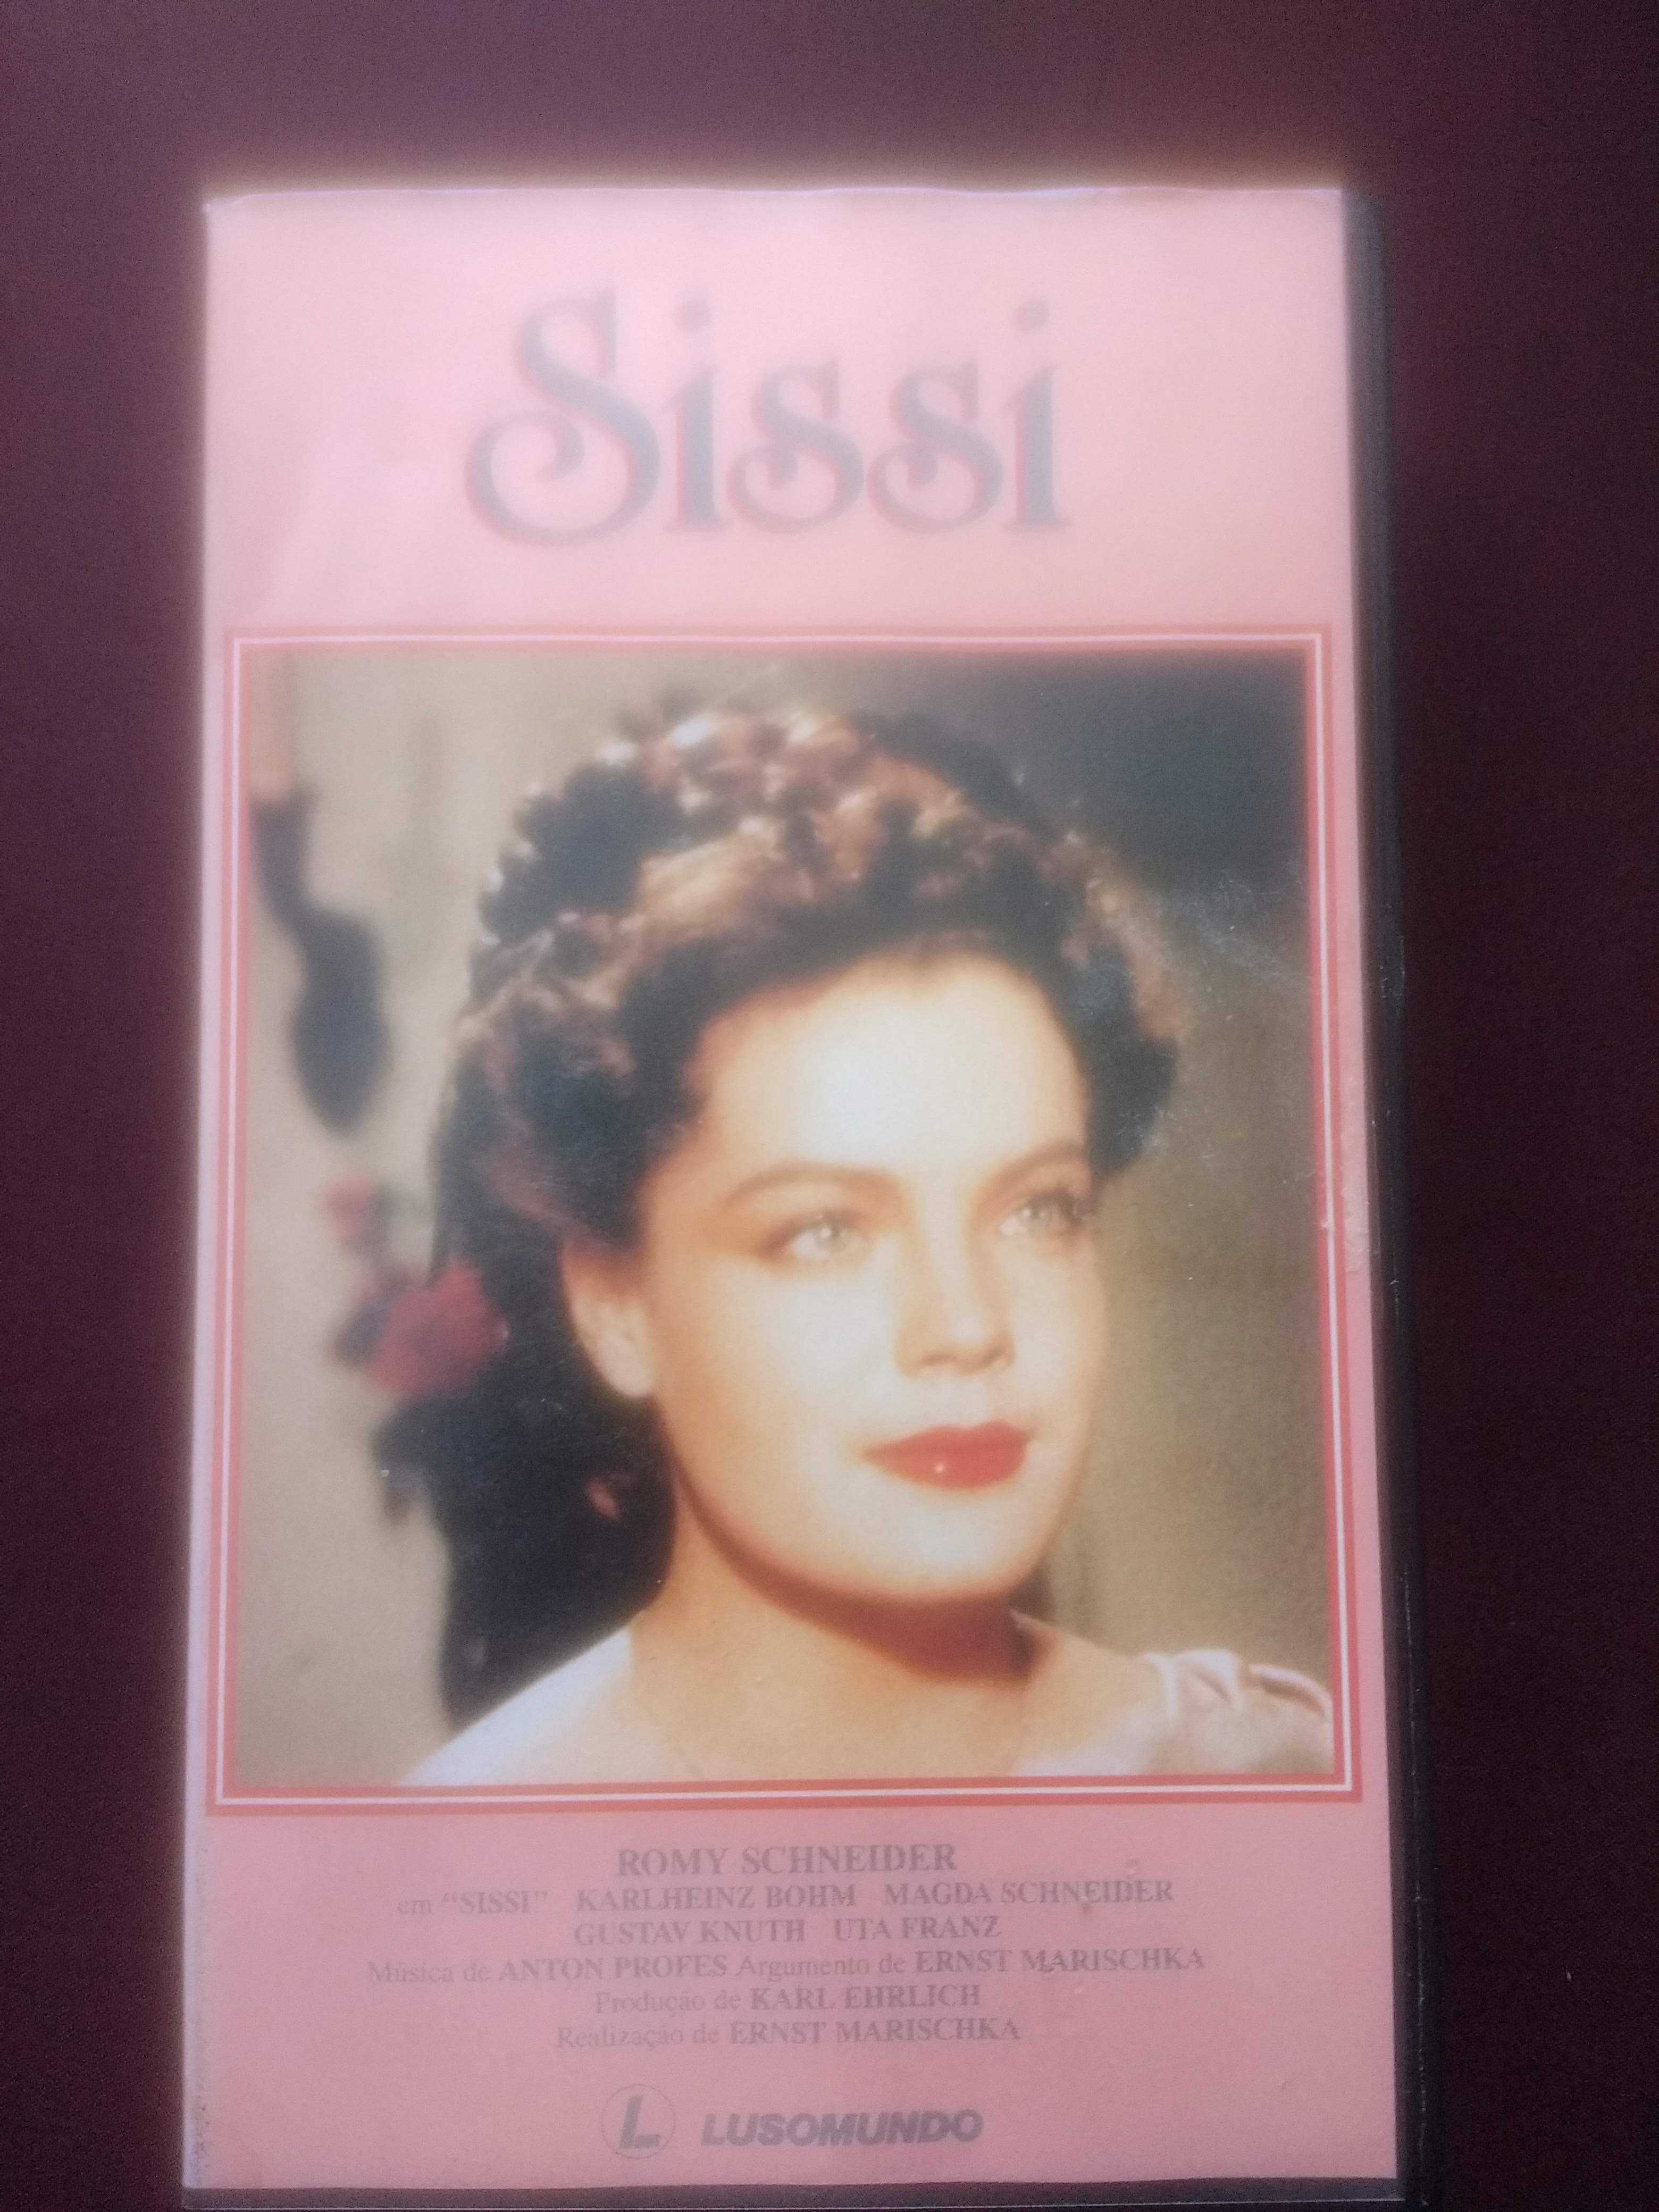 Sissi Jovem Imperatriz, filmes em cassetes (2) vídeo VHS volume 1 e 2